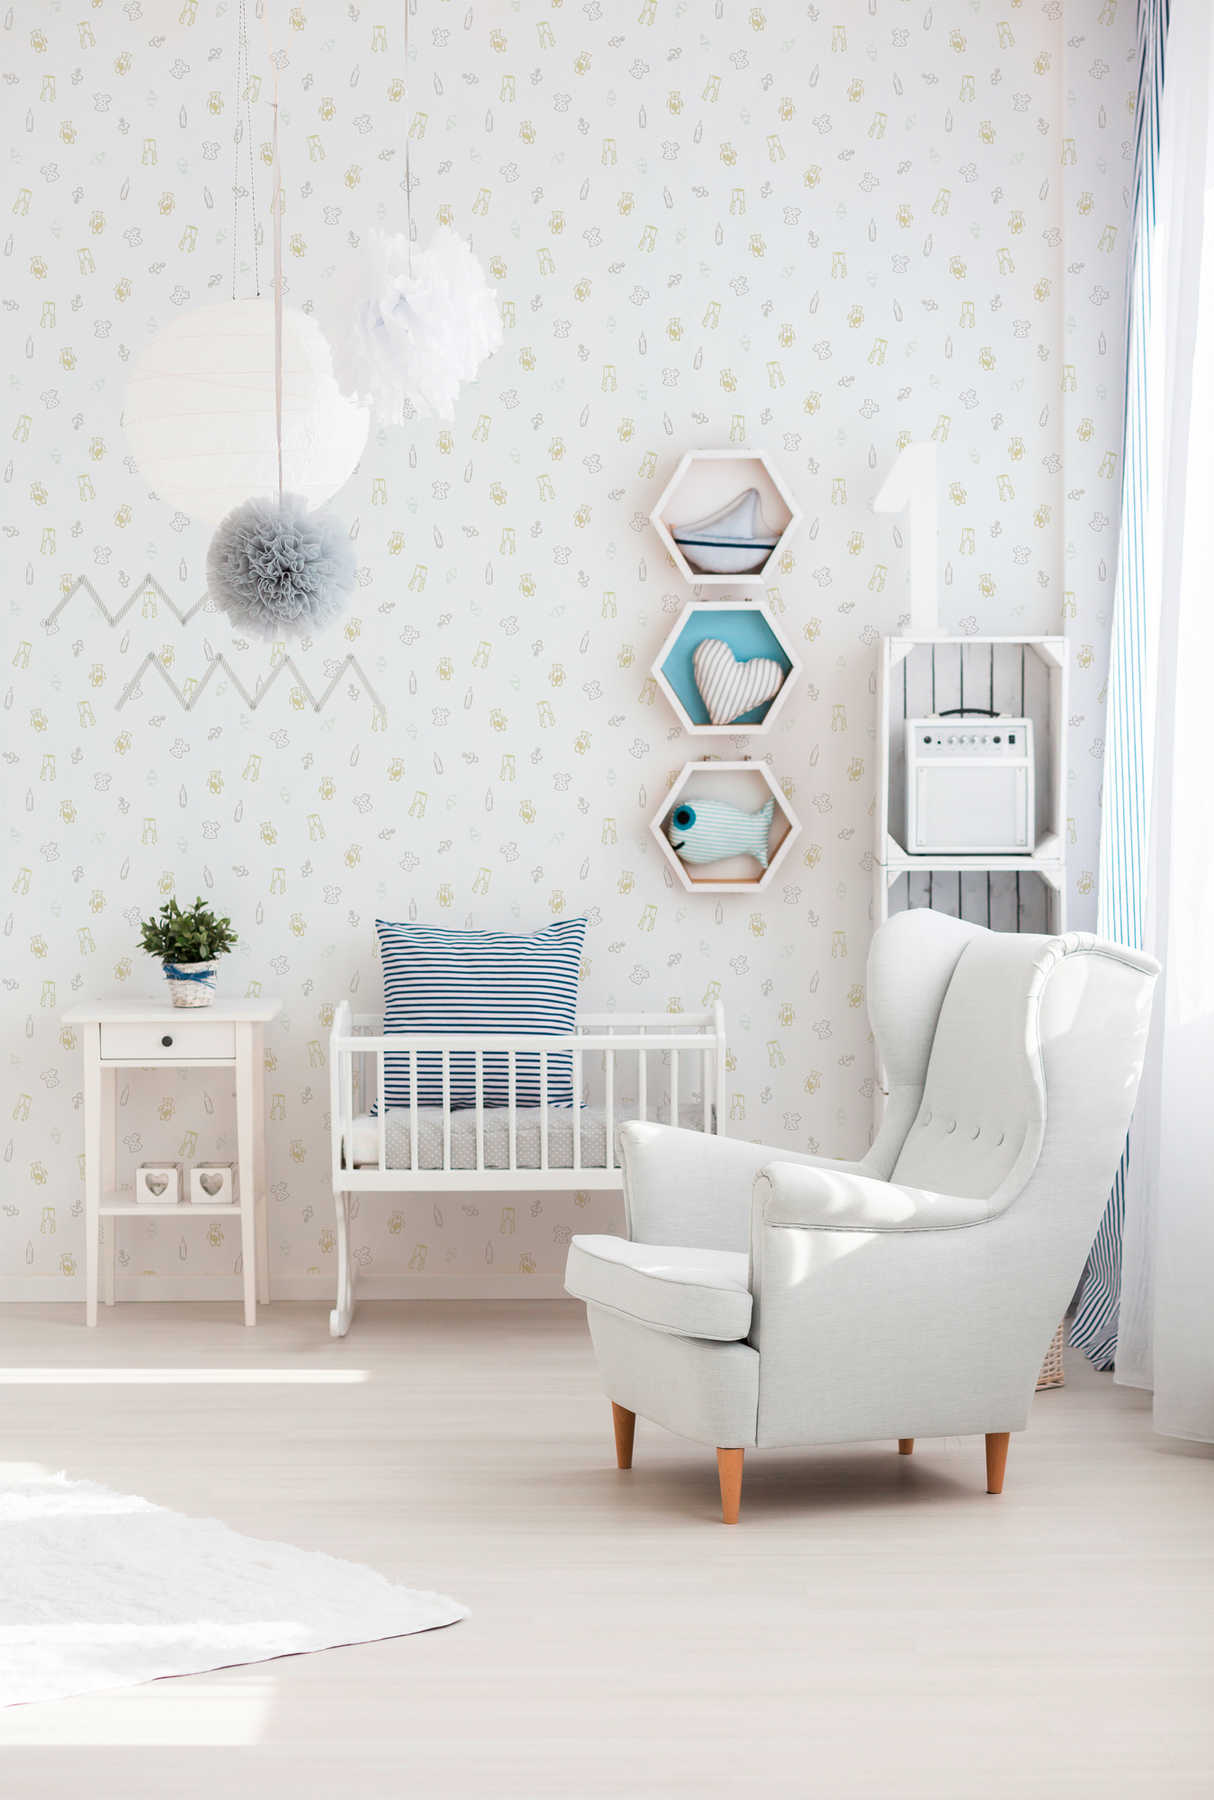             Behang babykamer met zoet patroon - metallic, wit
        